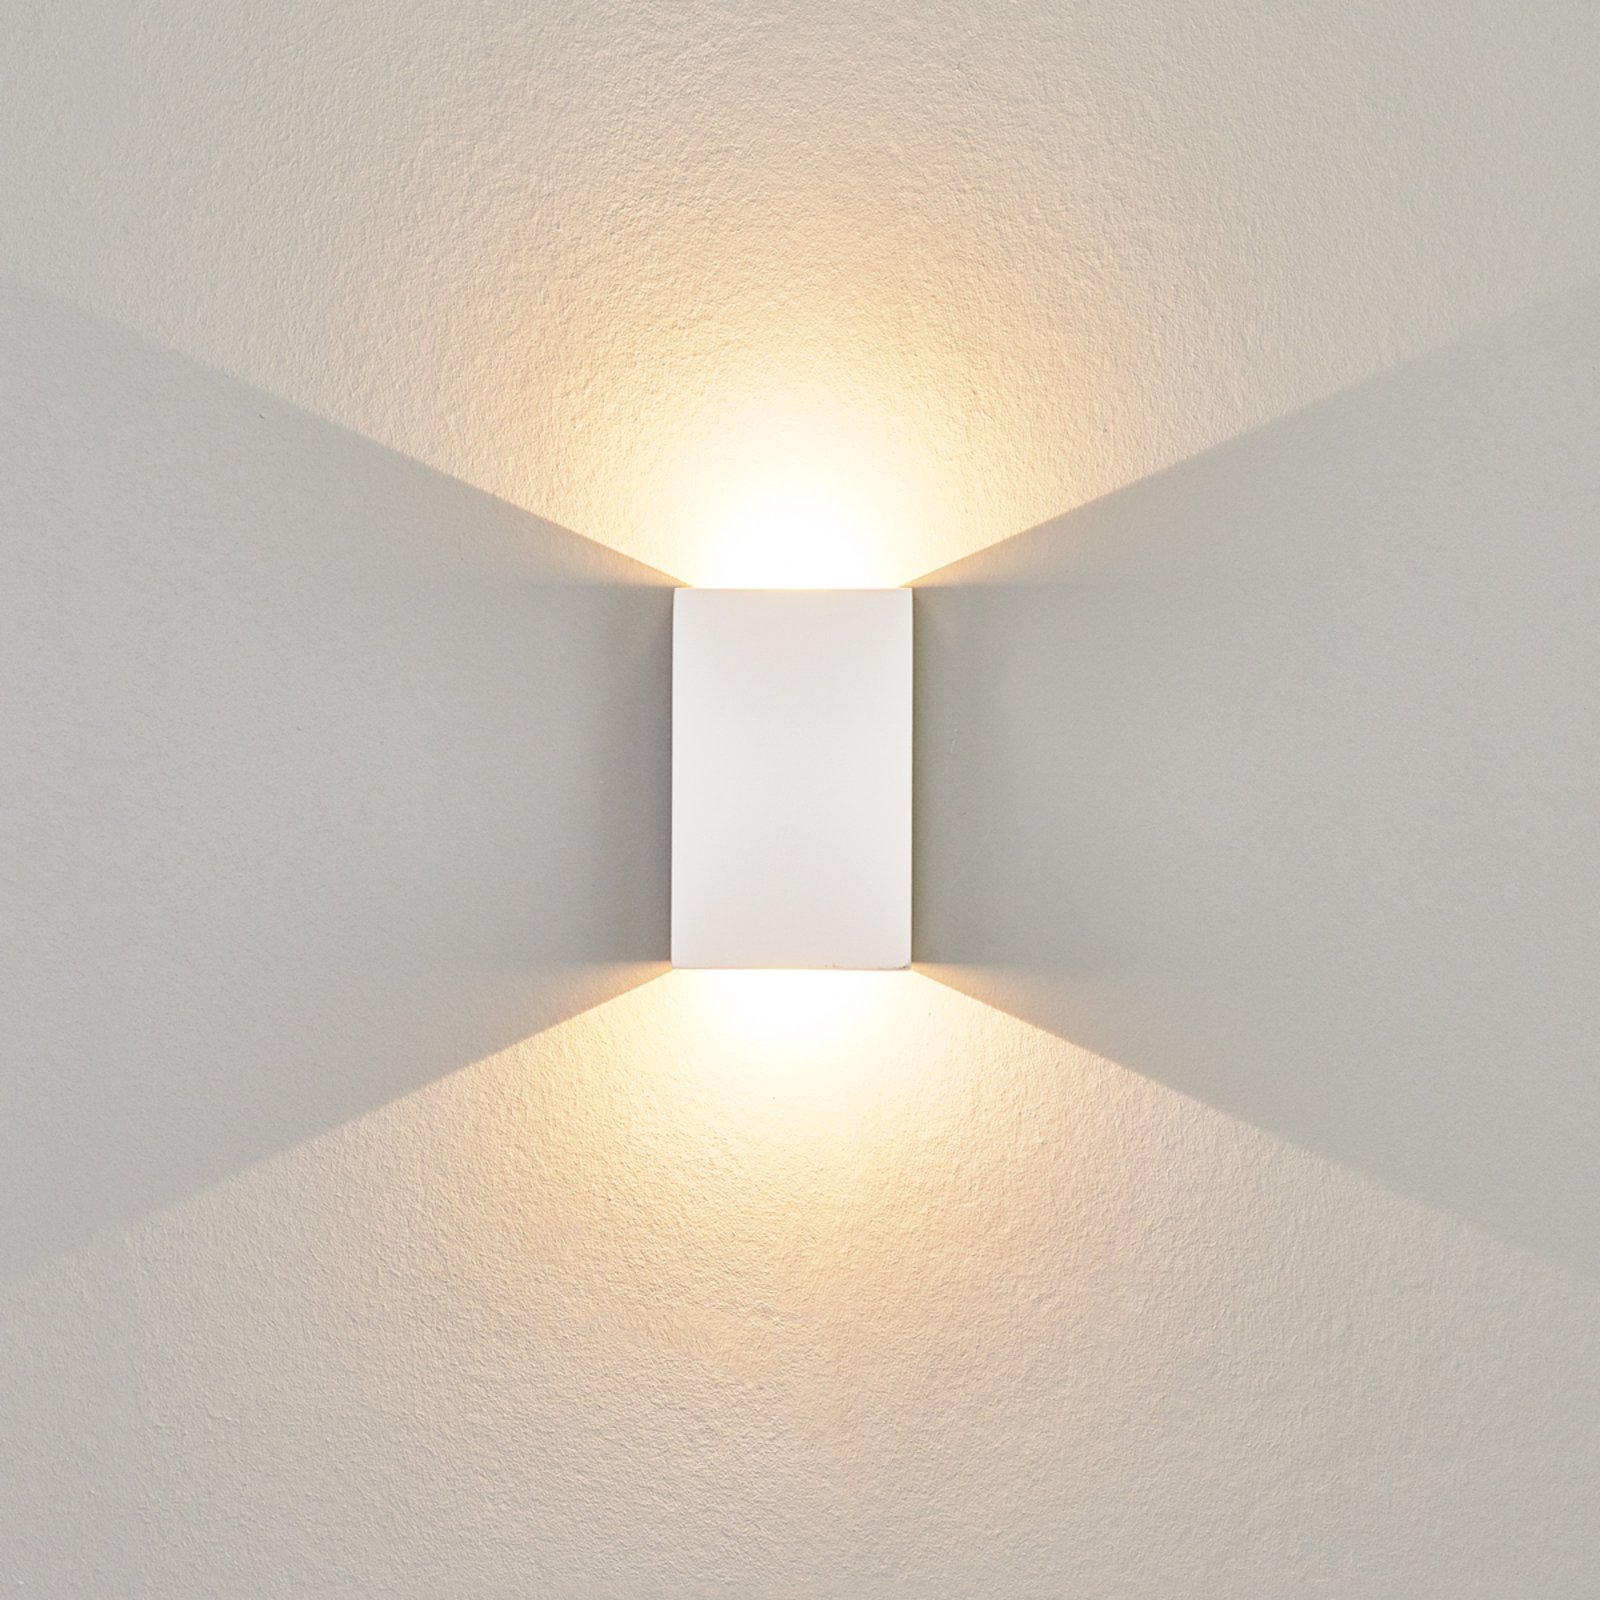 LED nástěnné světlo Fabiola ze sádry výška 16 cm